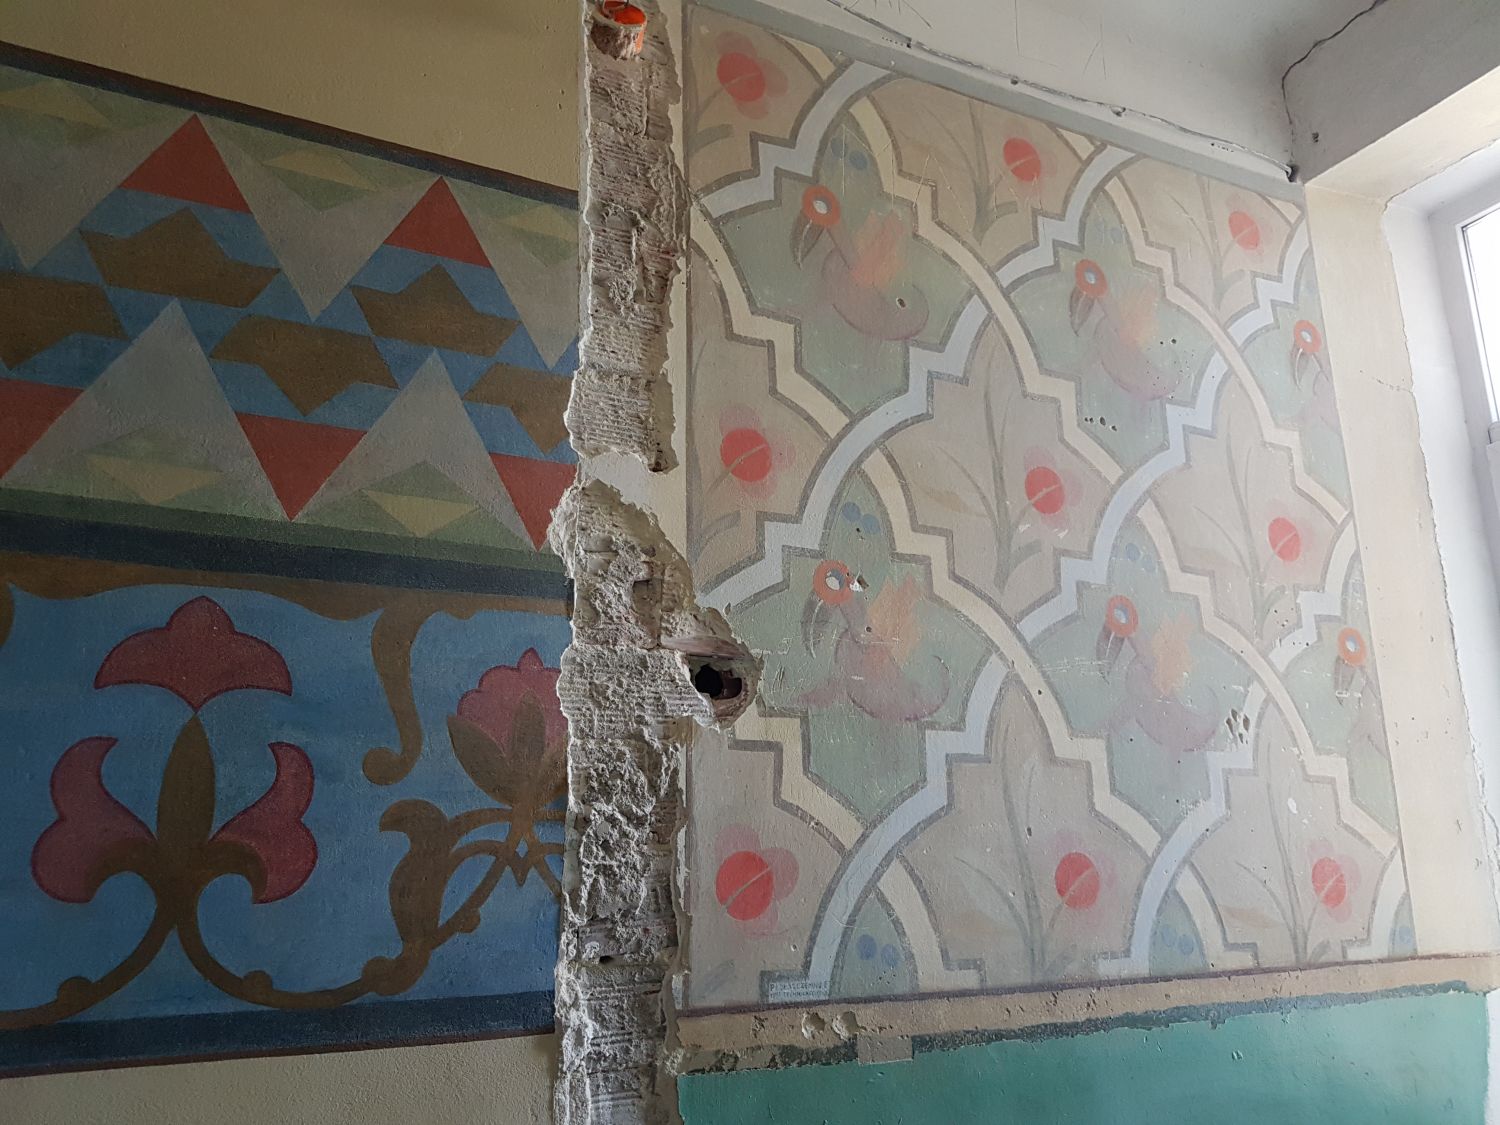 Na zdjęciu widać fragment ściany, na której widać odkryte podczas konserwacji fragmenty malowideł(szlaczki, figury różnej wielkości i koloru) i fragment zniszszonej ściany